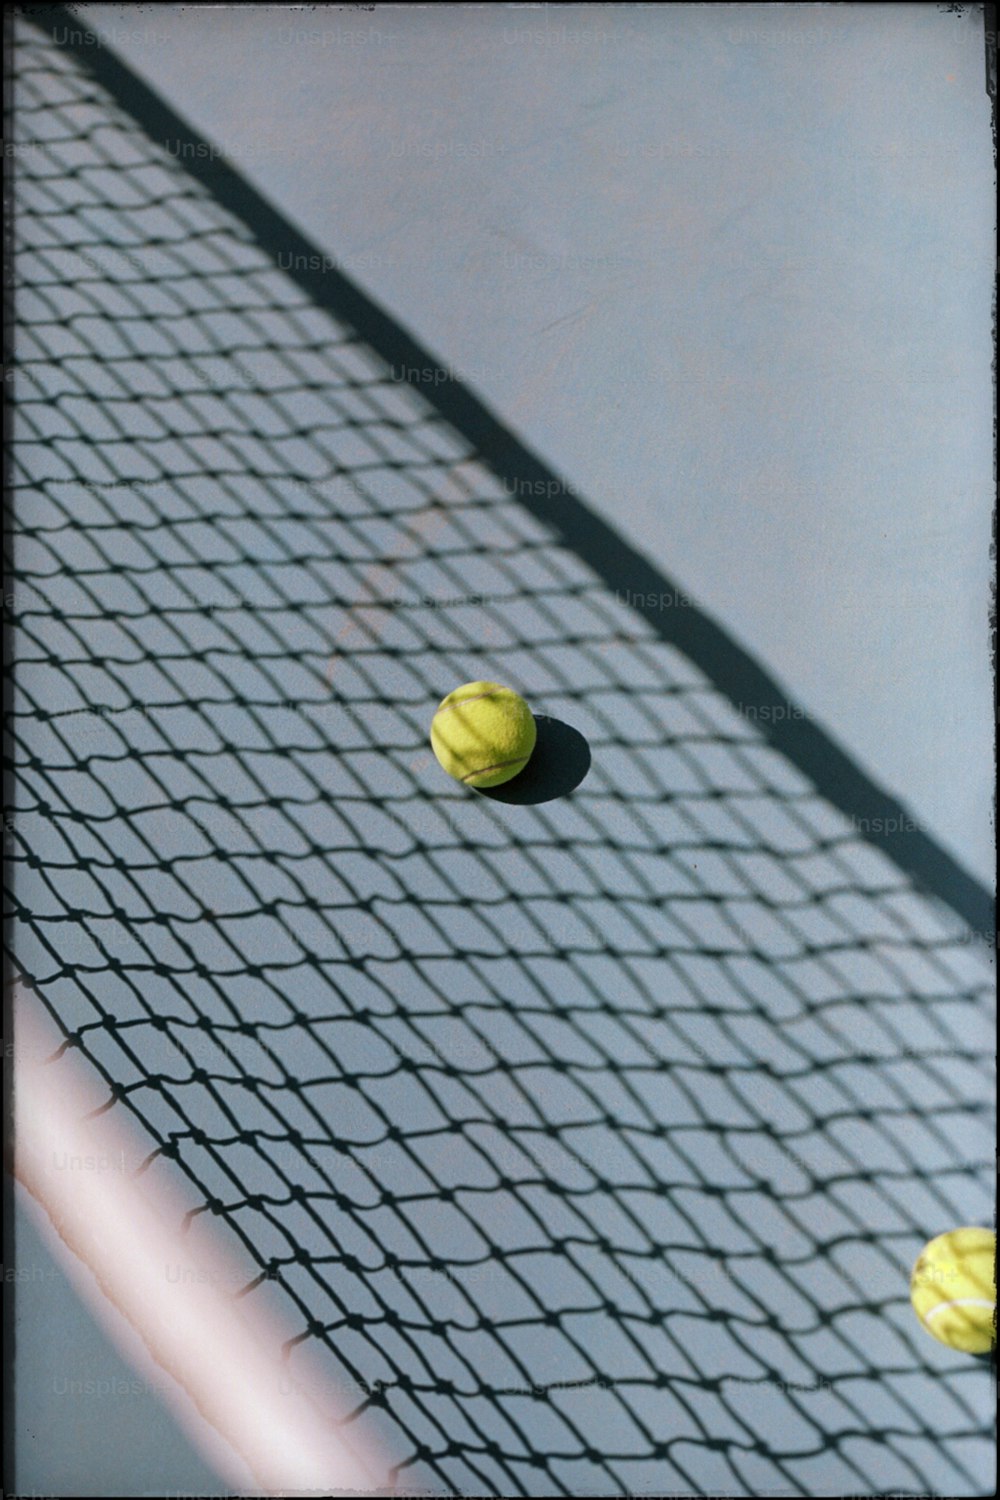 three tennis balls on a tennis court net